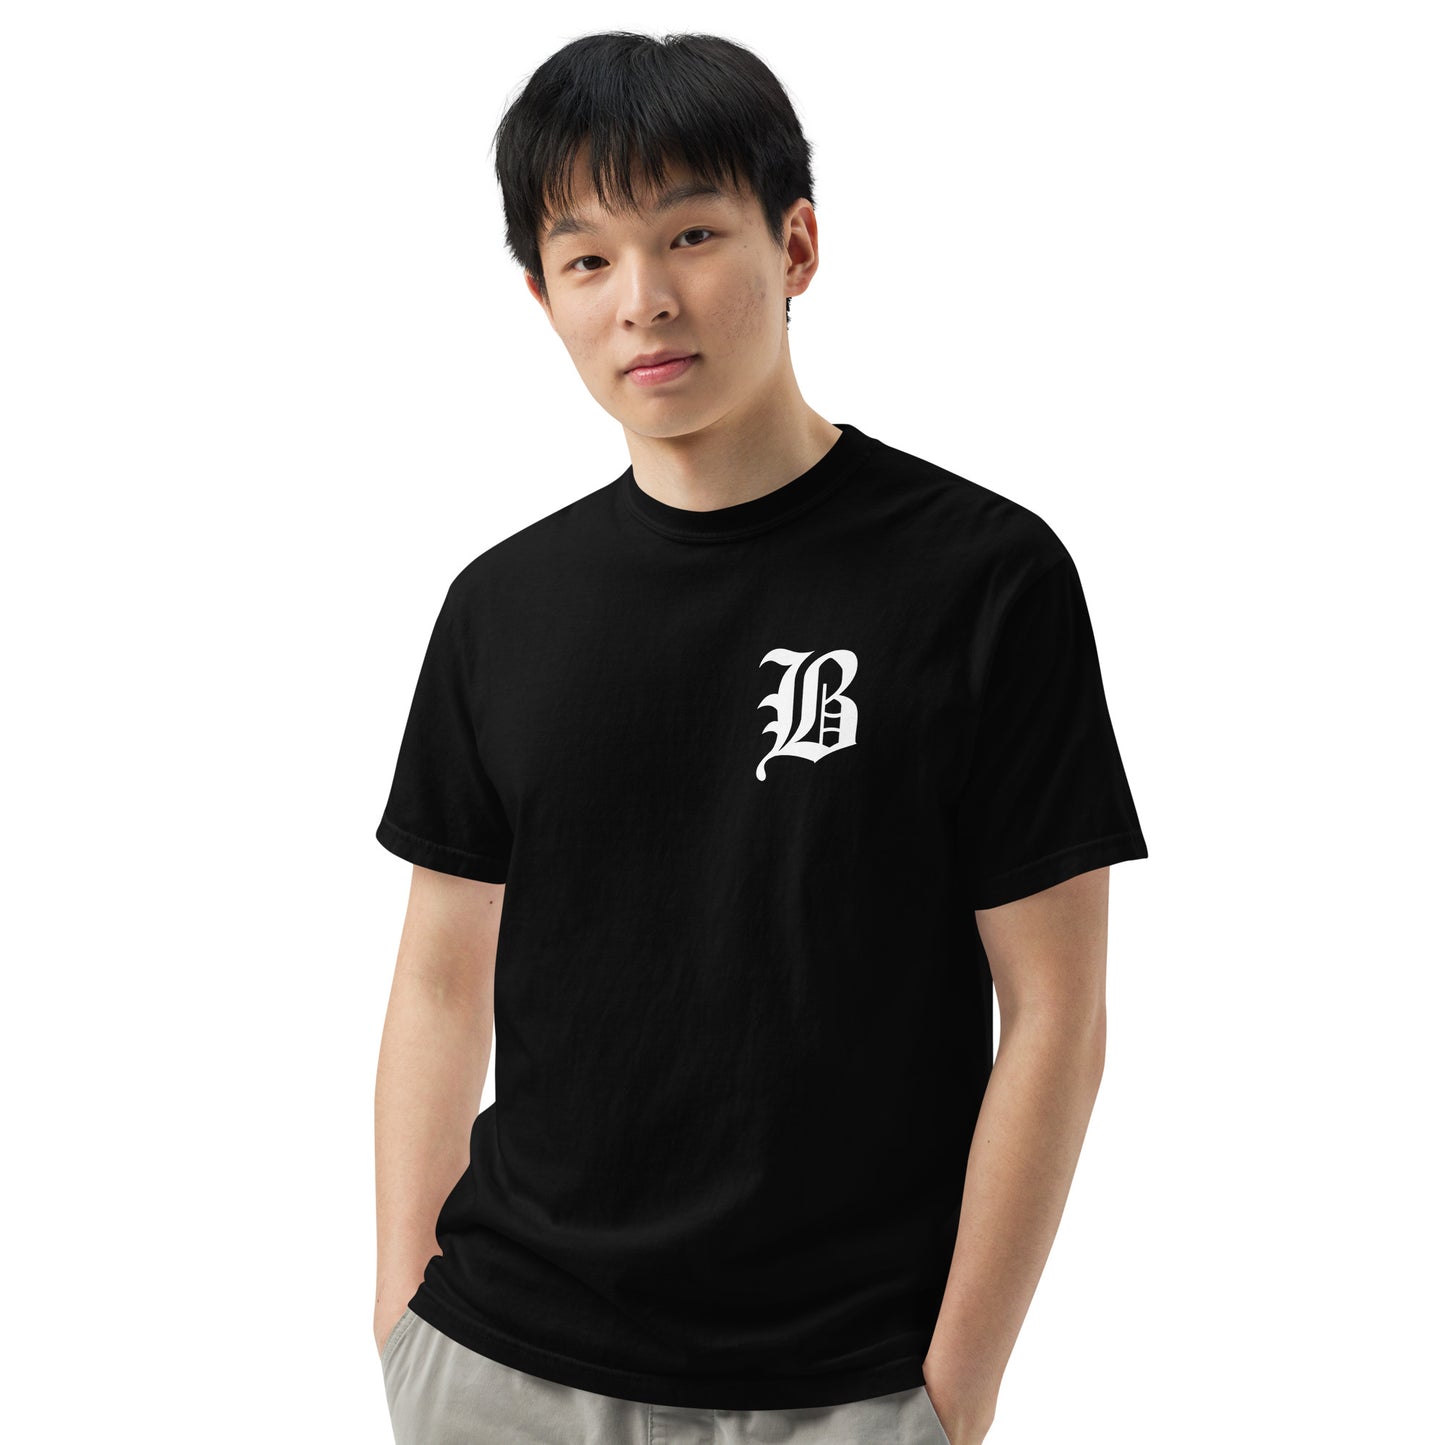 Barry B. T-shirt